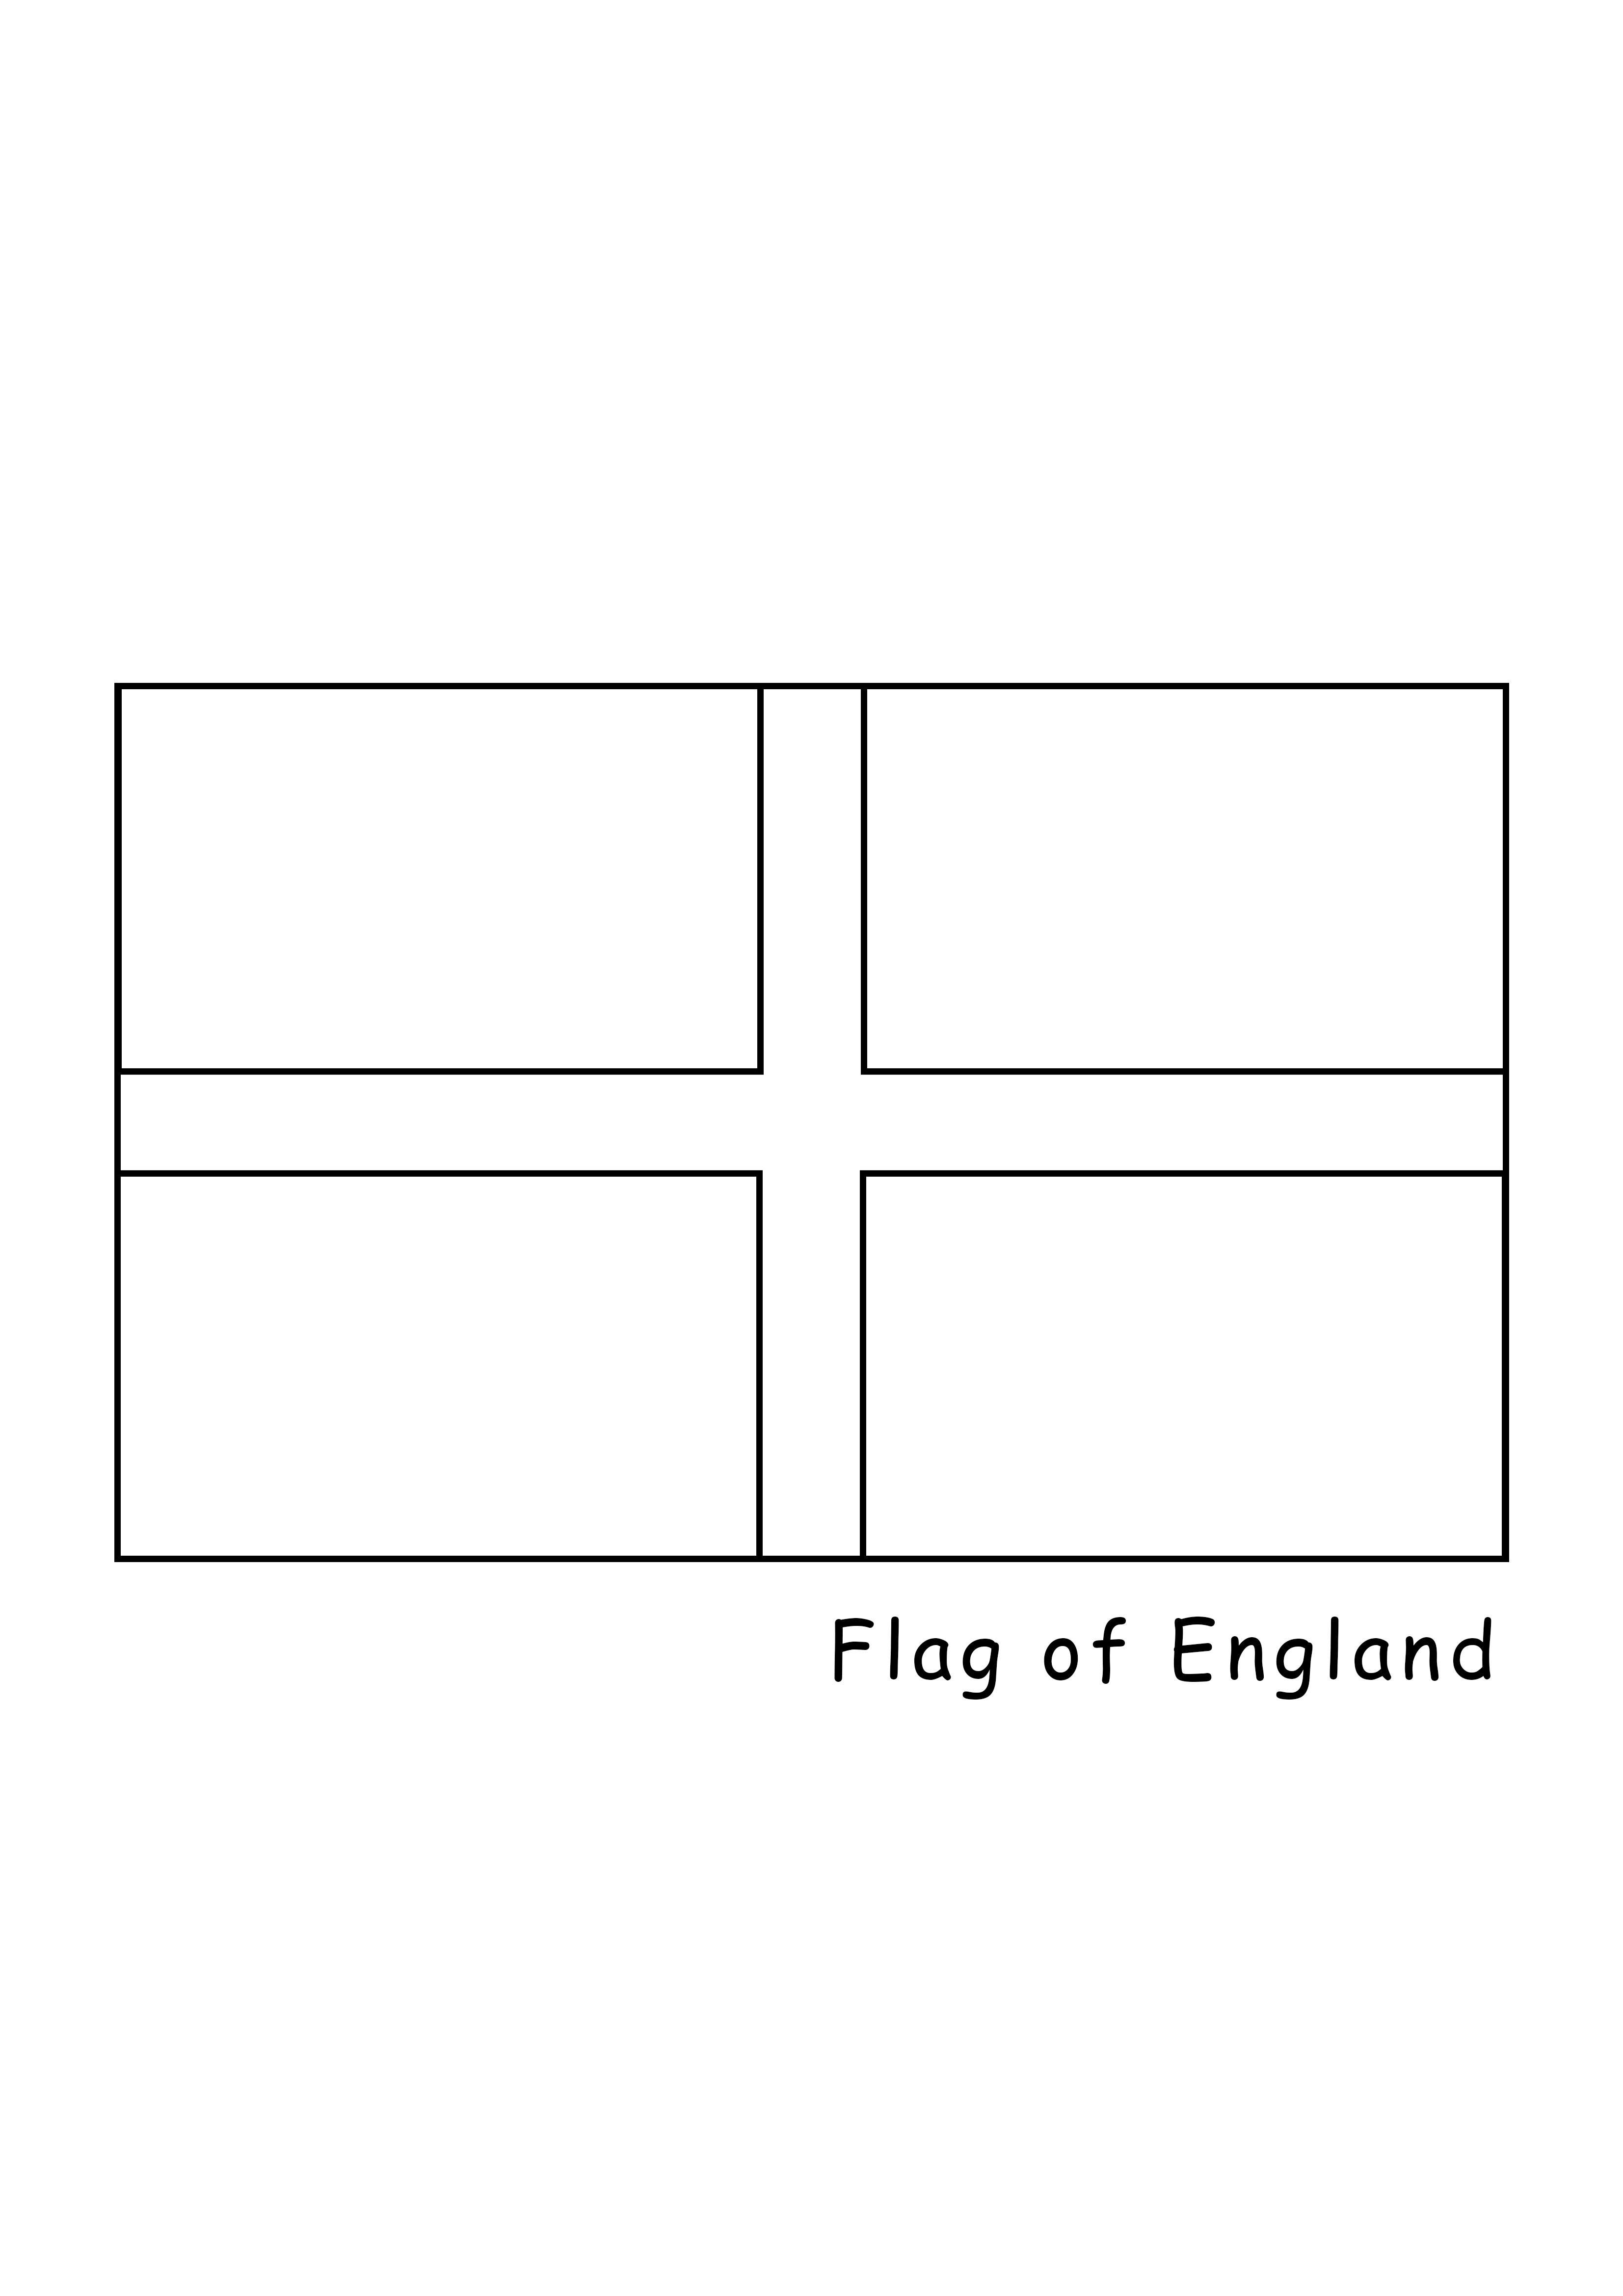 Bandiera dell'Inghilterra da stampare e colorare gratuitamente